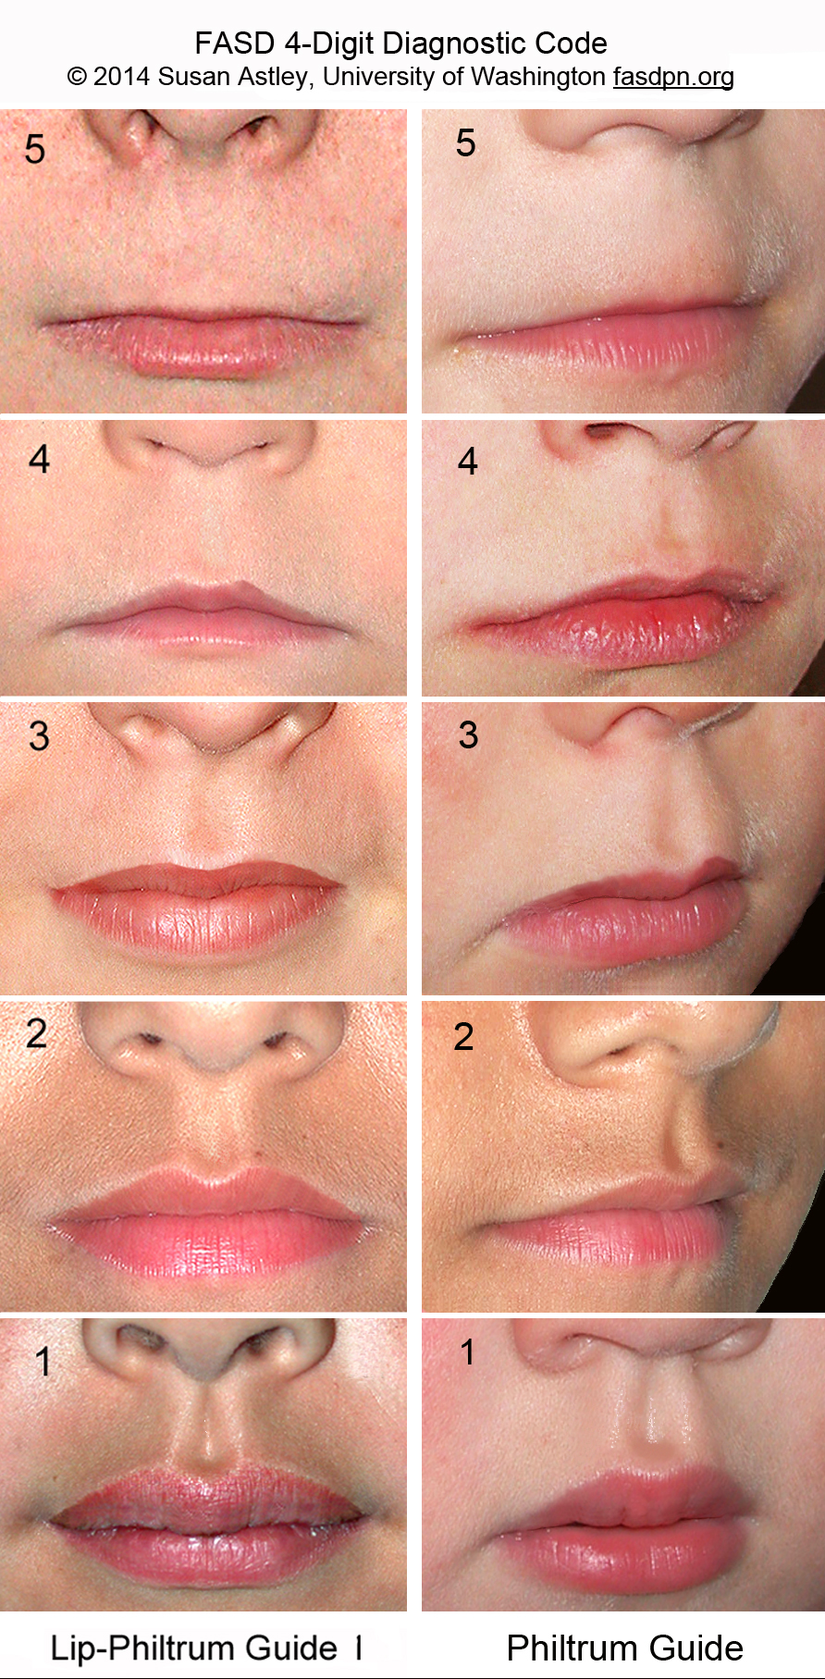 Dudak-Filtrum Kılavuzu-1, üst dudak inceliğini ve filtrum düzlüğünü sıralamak için kullanılır. 4. ve 5. sıralar Fetal Alkol Sendromu yüz fenotipini karakterize eden ince dudak ve pürüzsüz filtrumu yansıtmaktadır. 3. sıra genel popülasyon ortalamasını temsil eder.